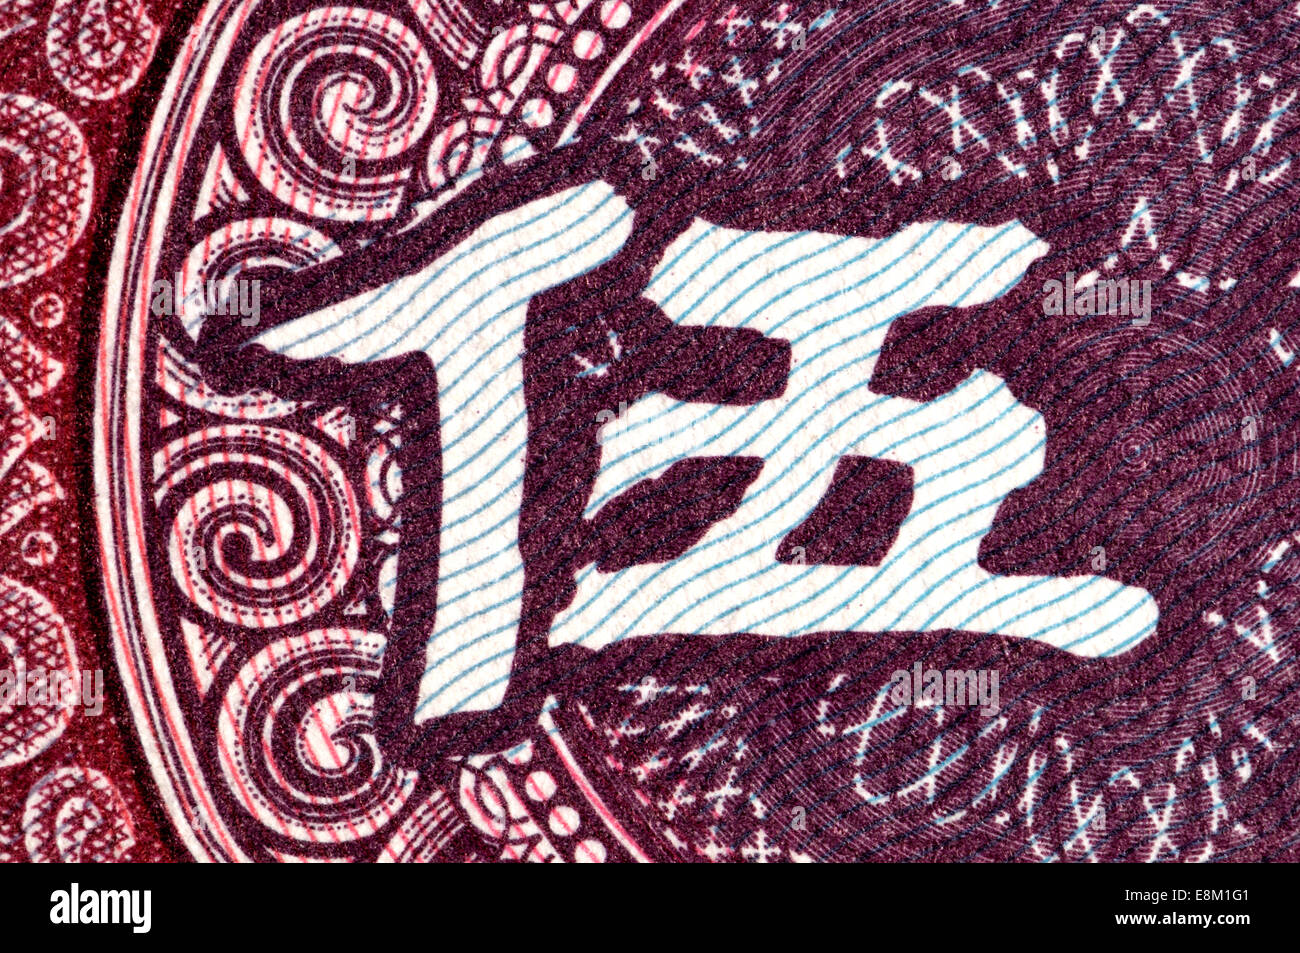 Ausschnitt aus einer chinesischen Banknote zeigt das Schriftzeichen für "fünf" Stockfoto